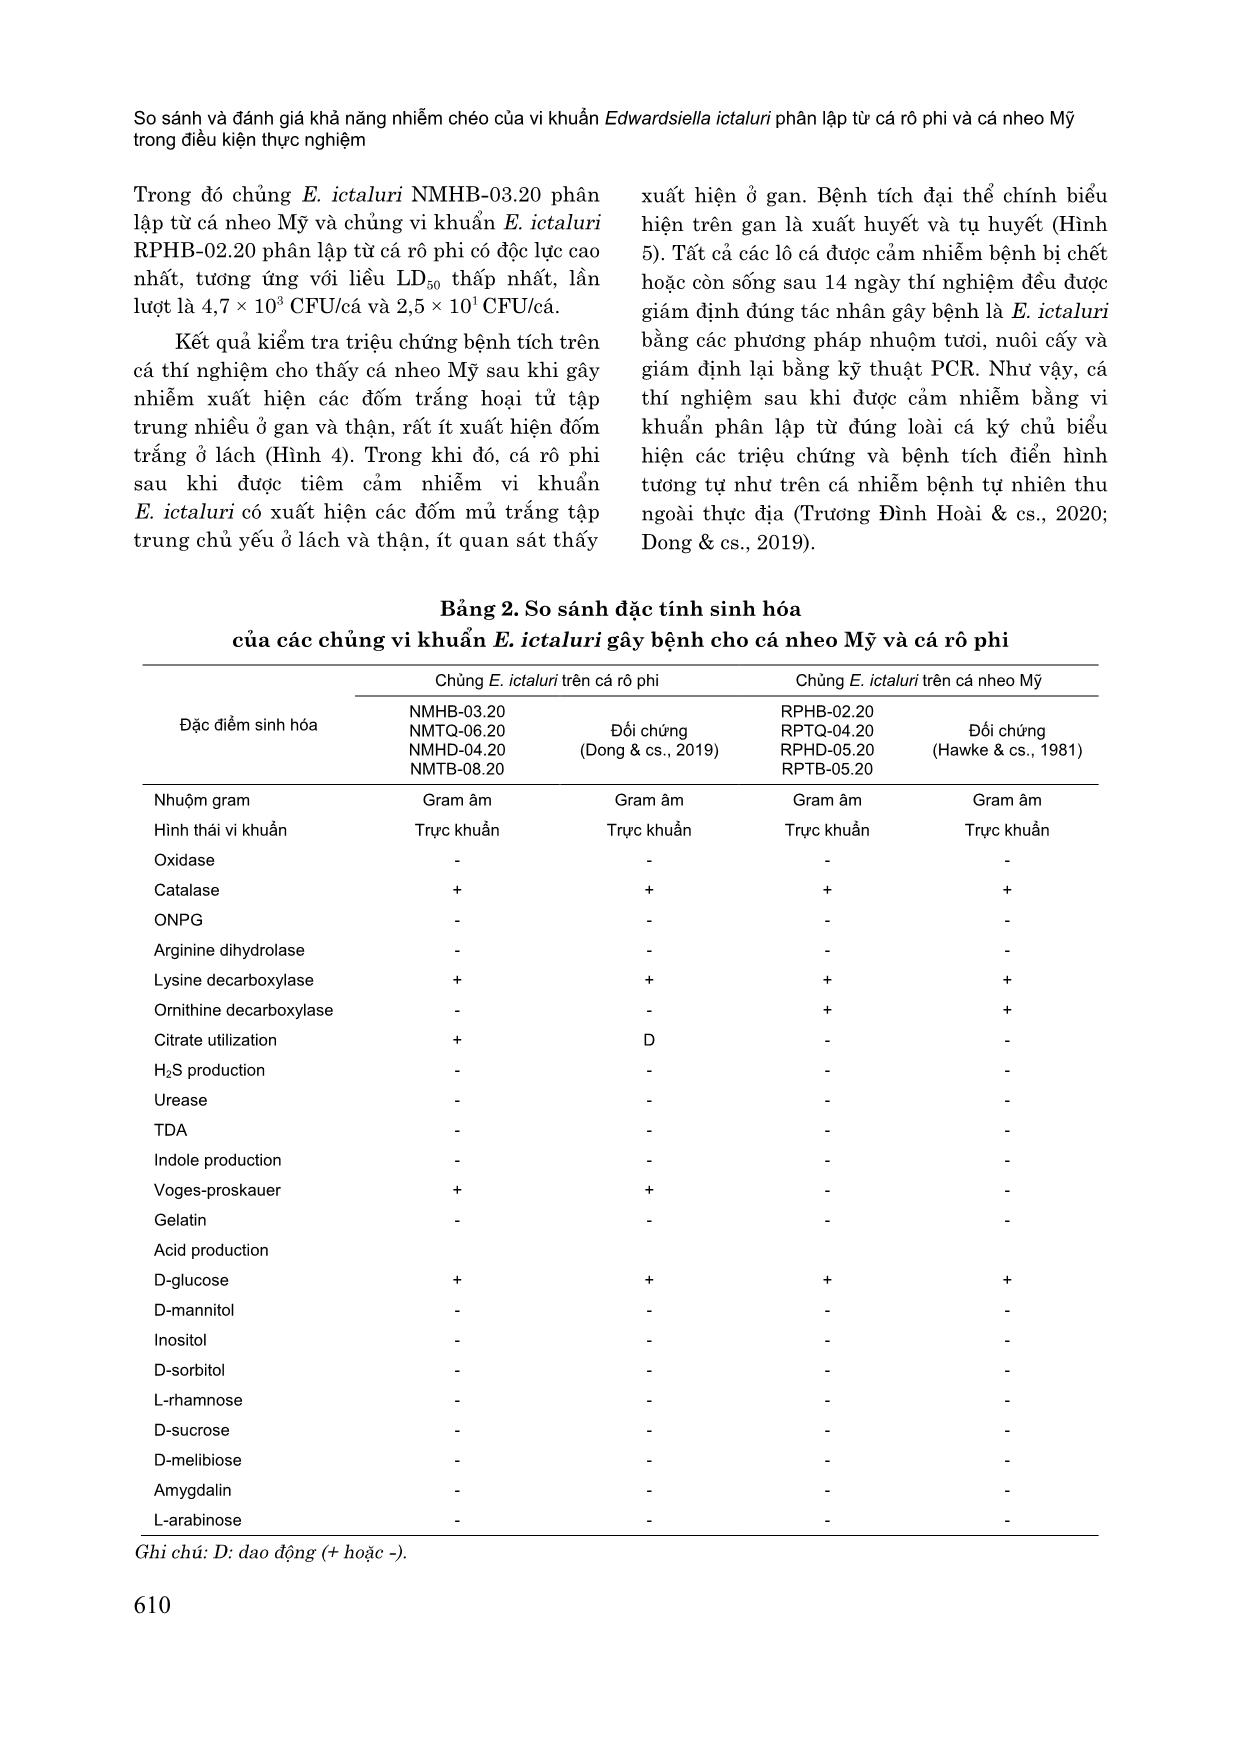 So sánh và đánh giá khả năng nhiễm chéo của vi khuẩn edwardsiella ictaluri phân lập từ cá rô phi và cá nheo mỹ trong điều kiện thực nghiệm trang 6